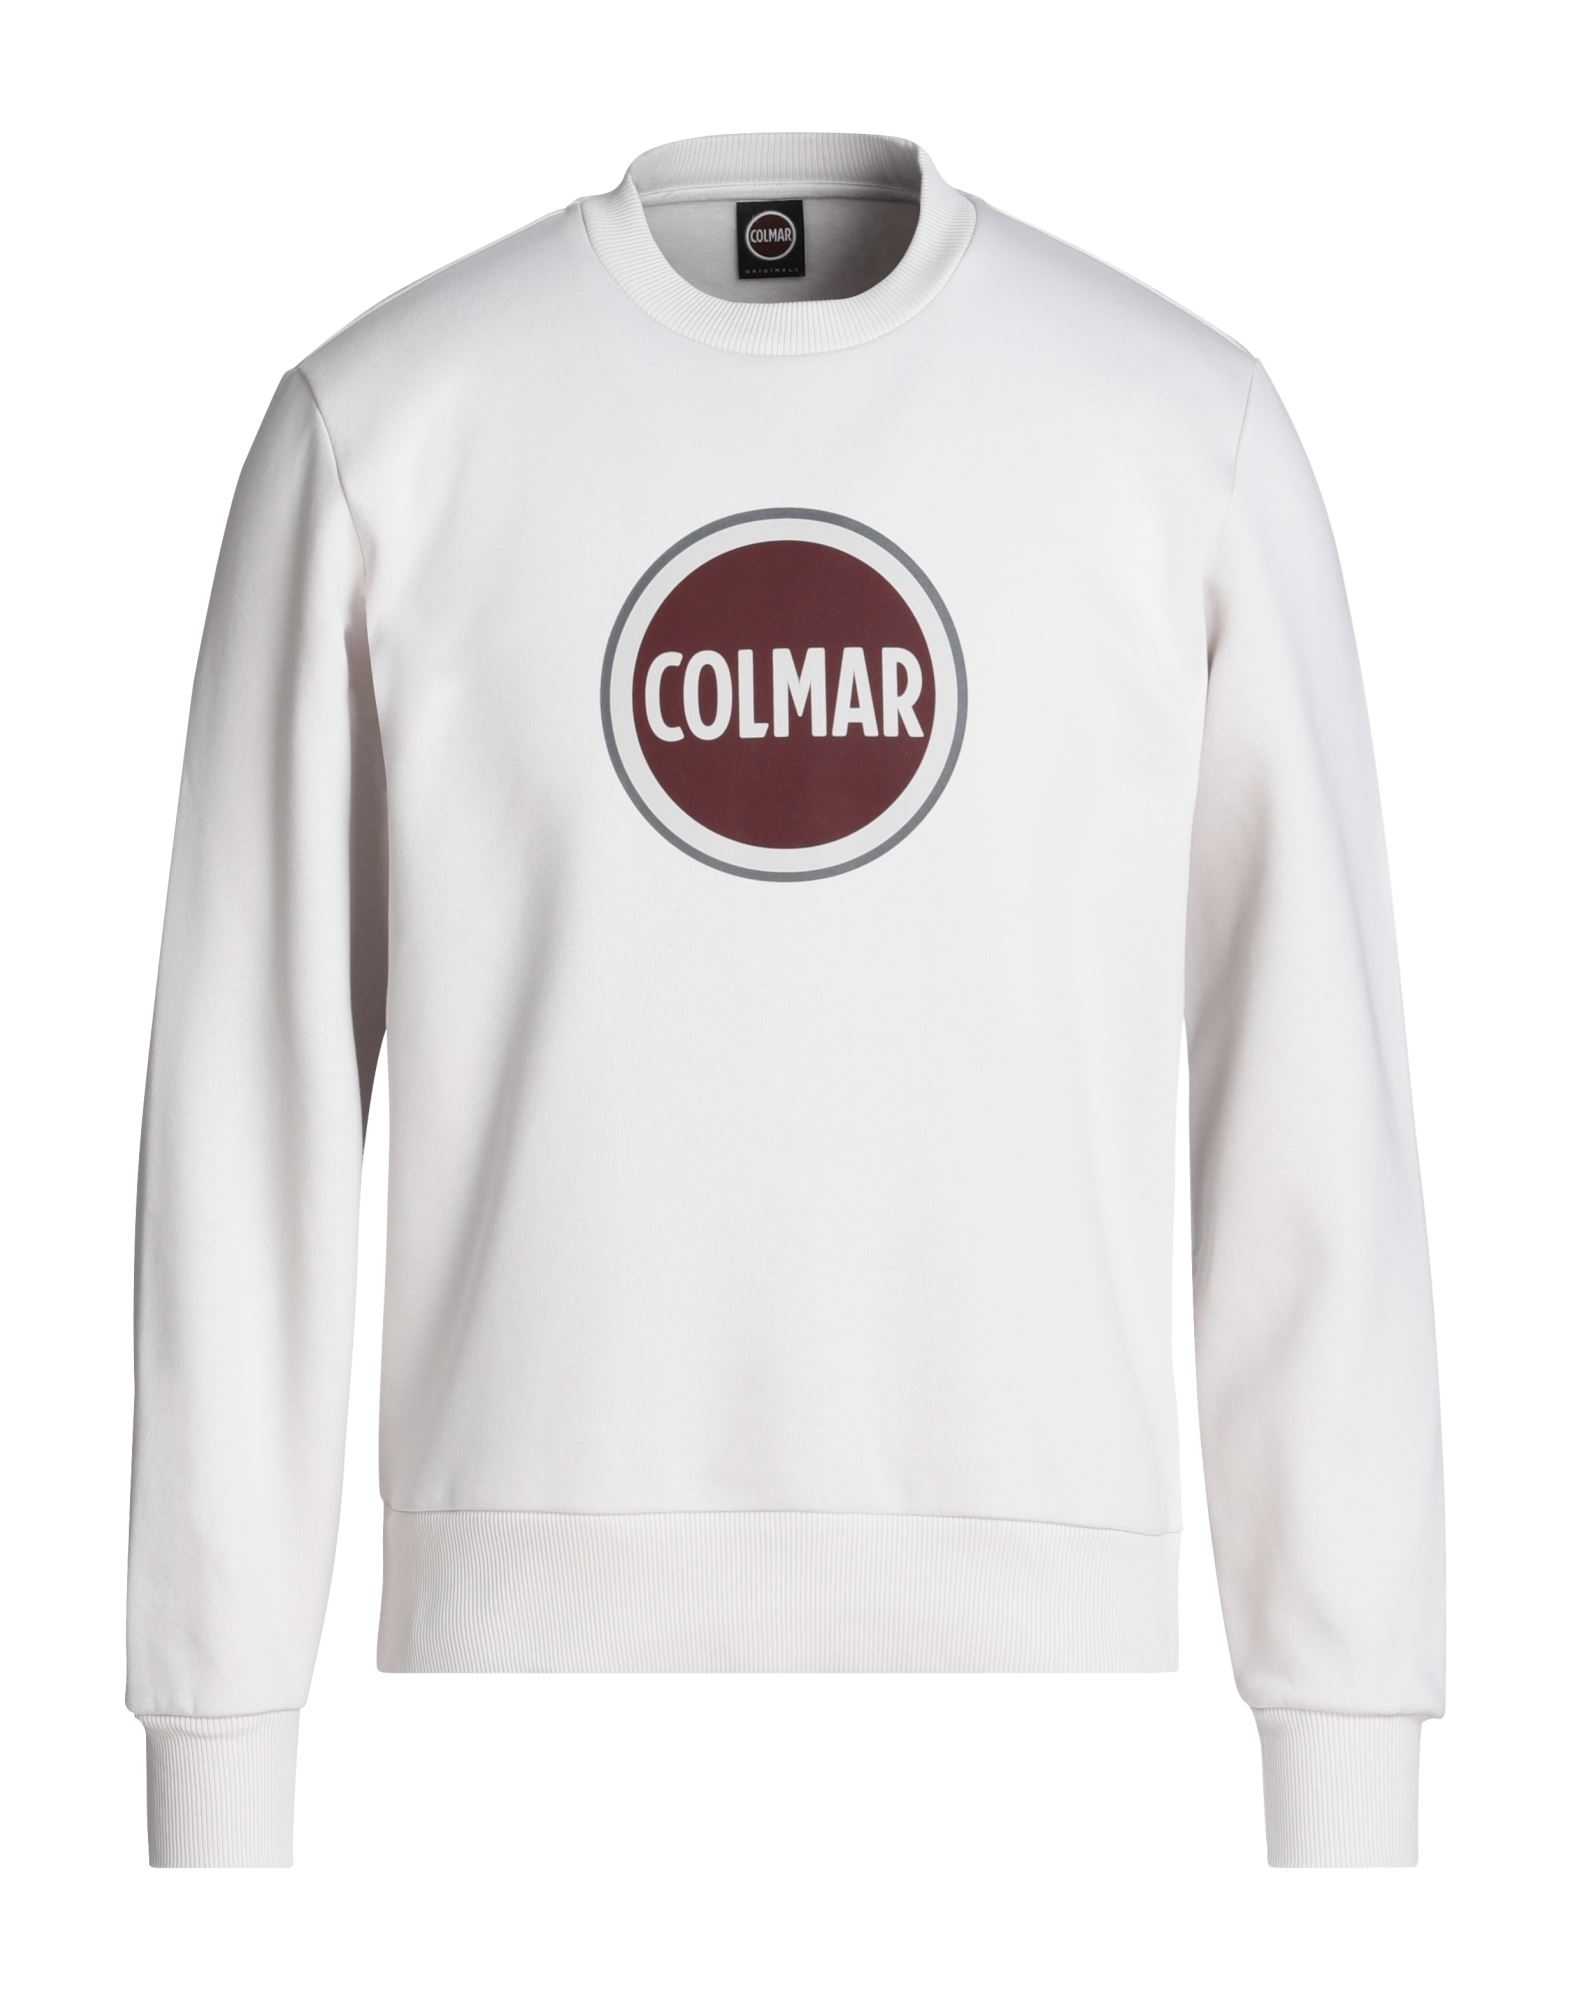 COLMAR Sweatshirt Herren Off white von COLMAR